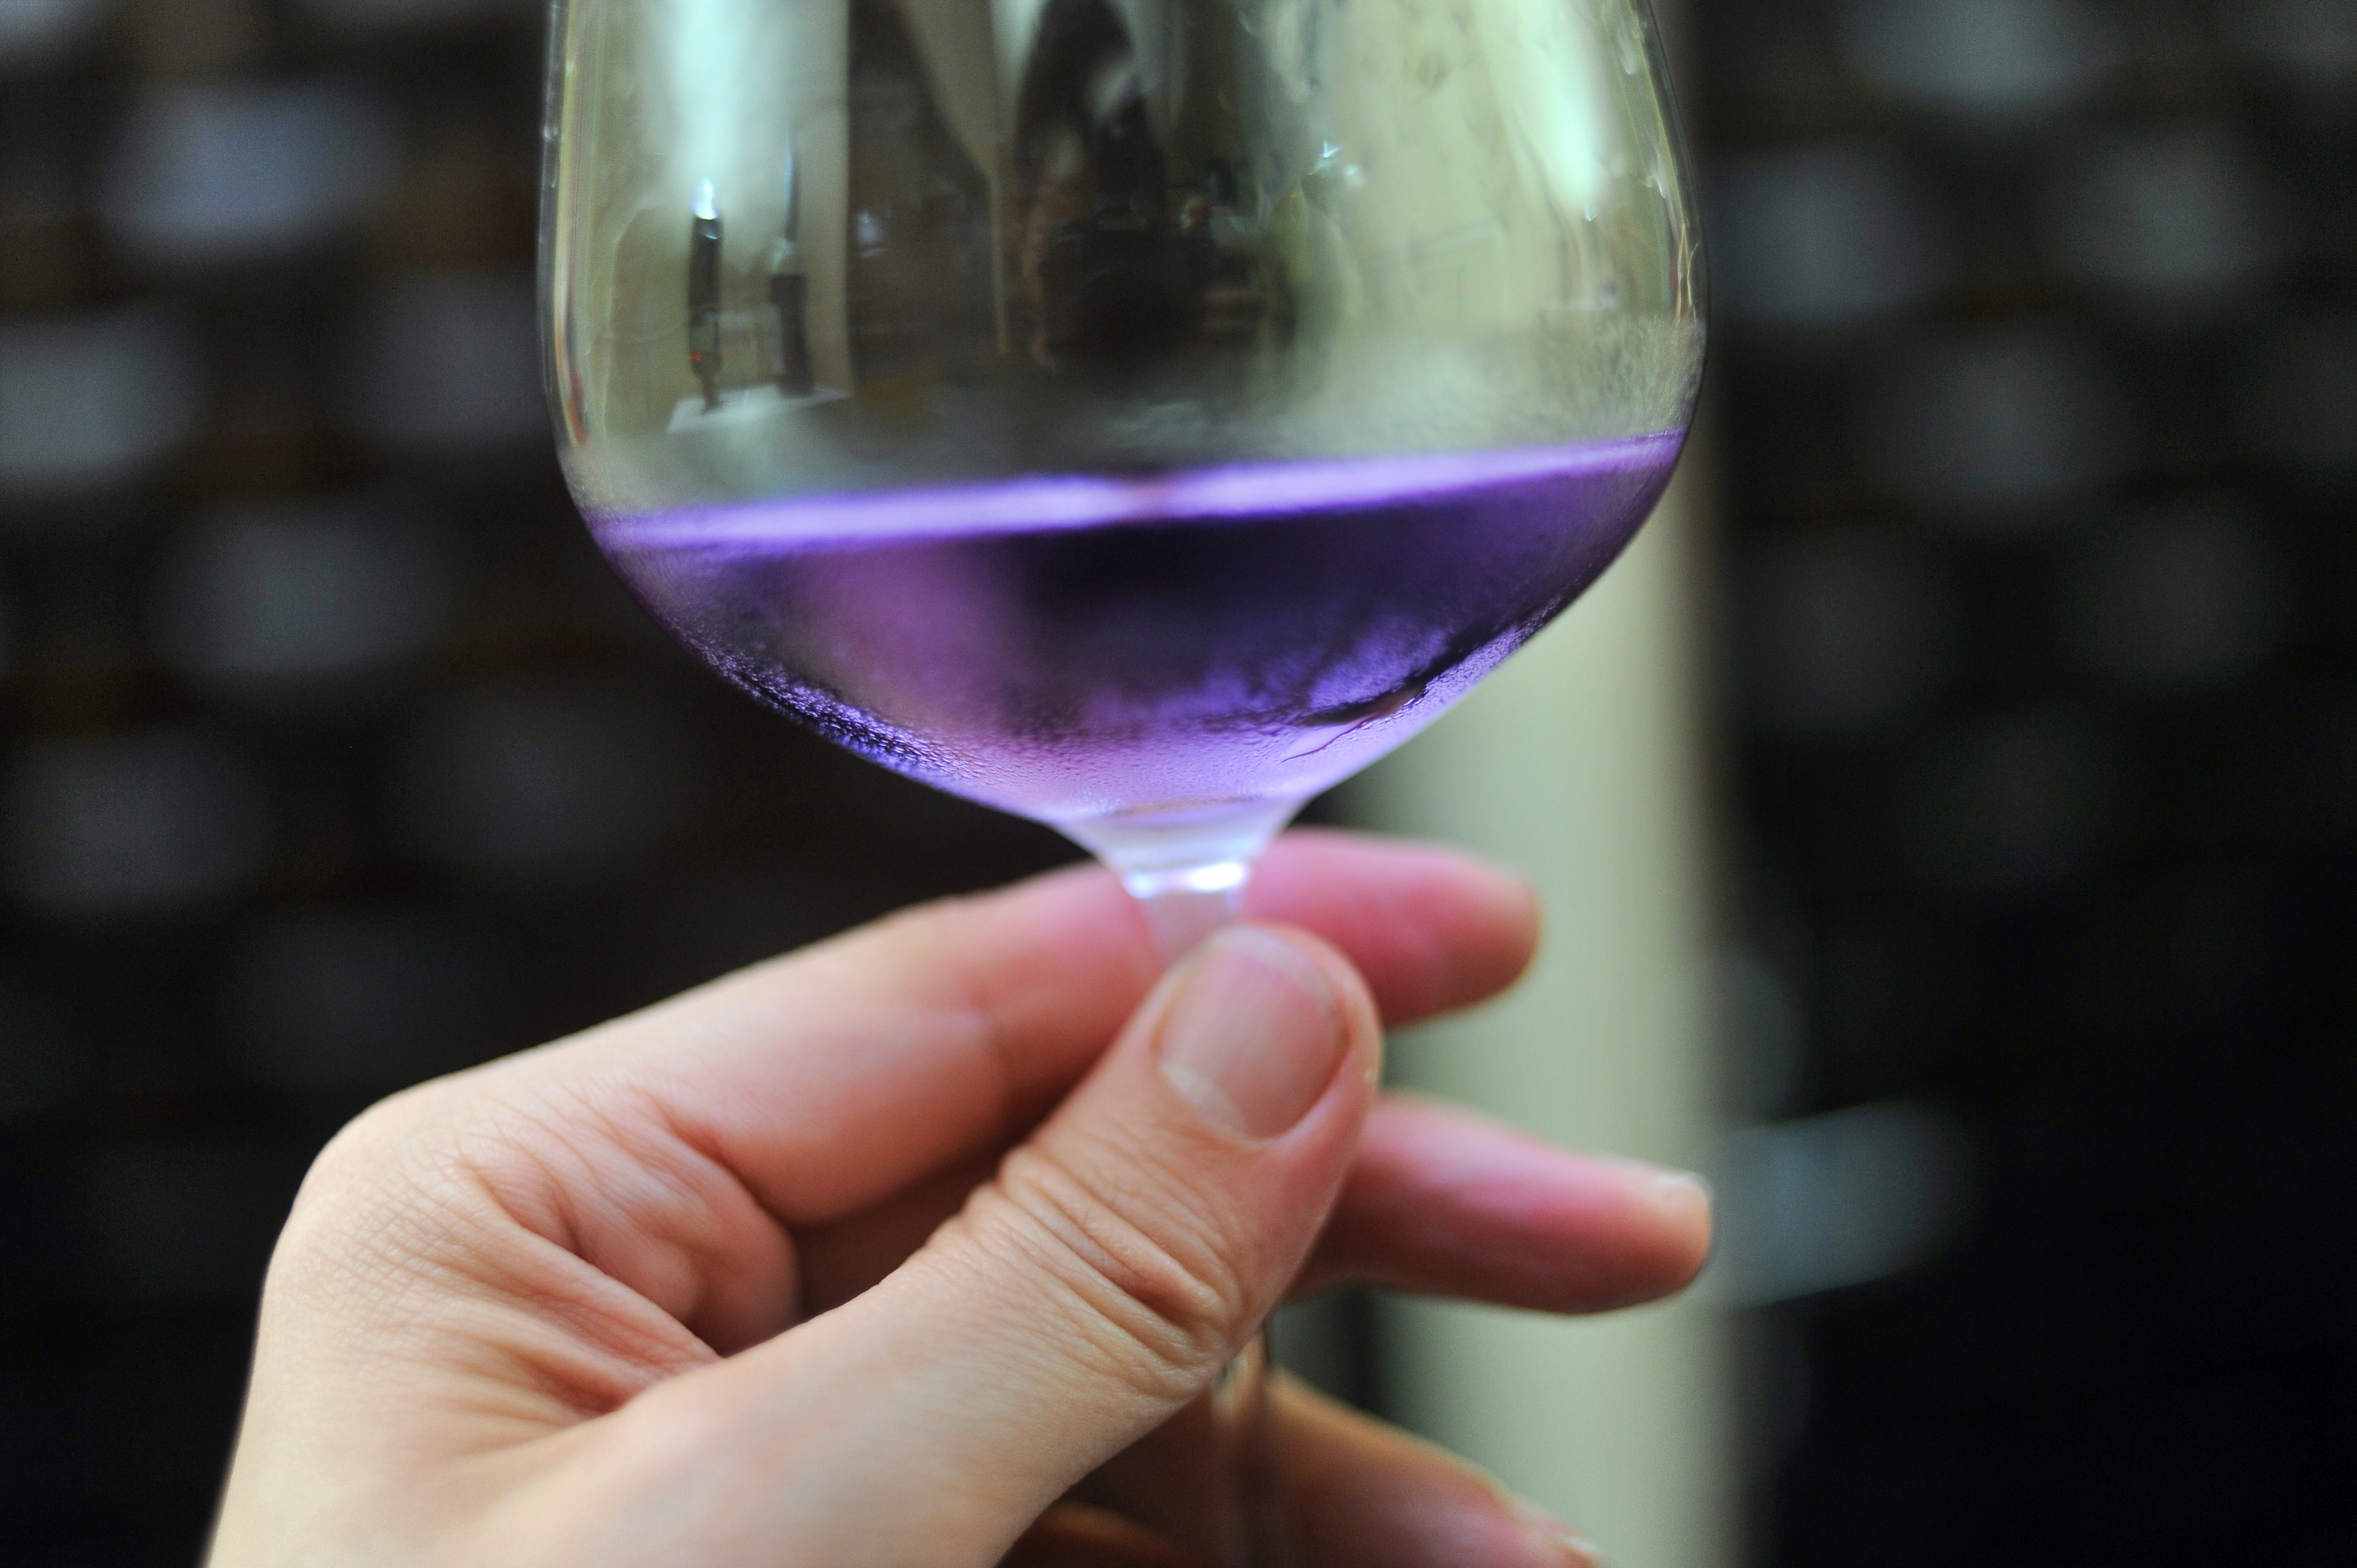 澳洲夢幻的紫色葡萄酒Purple Reign好喝嗎？ 值得買嗎？